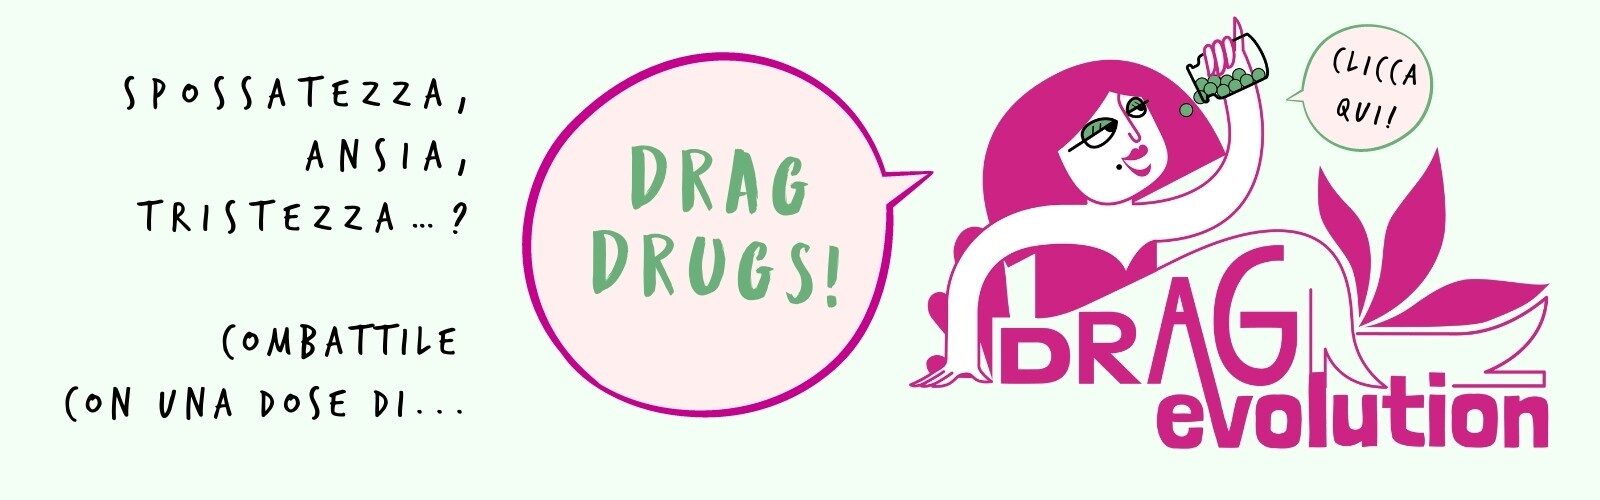 Drag-drugs-bribe-immagini-DE-per-sito-def-gallery-iniziale